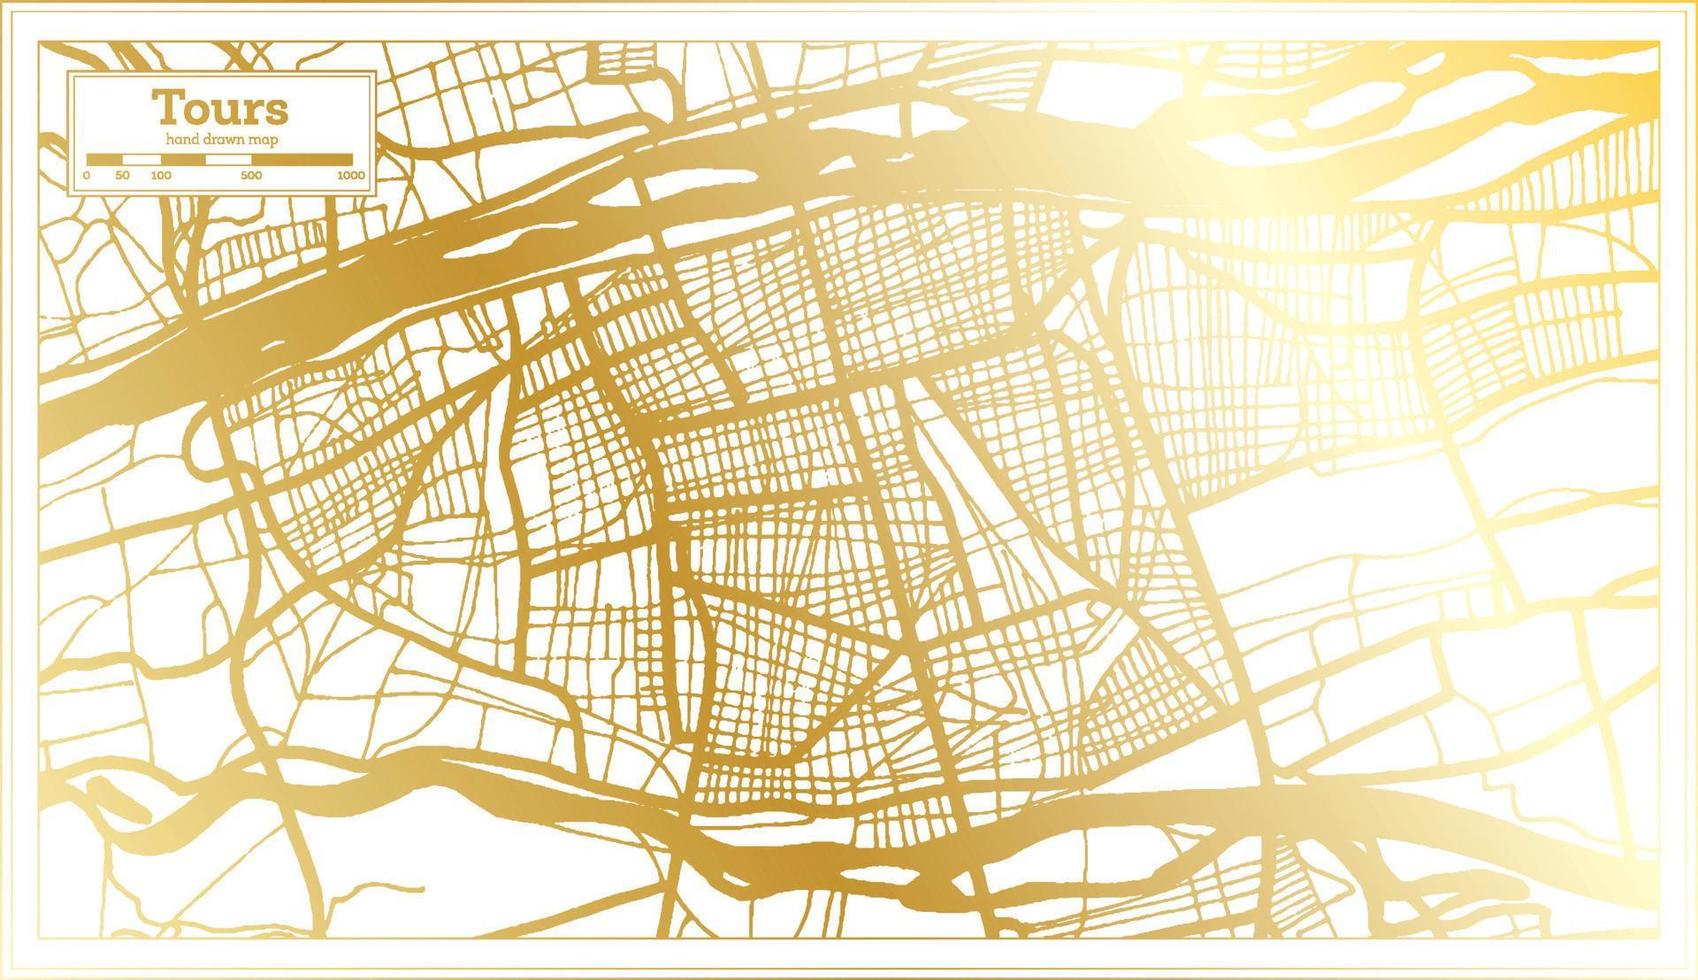 tours france carte de la ville dans un style rétro de couleur dorée. carte muette. vecteur